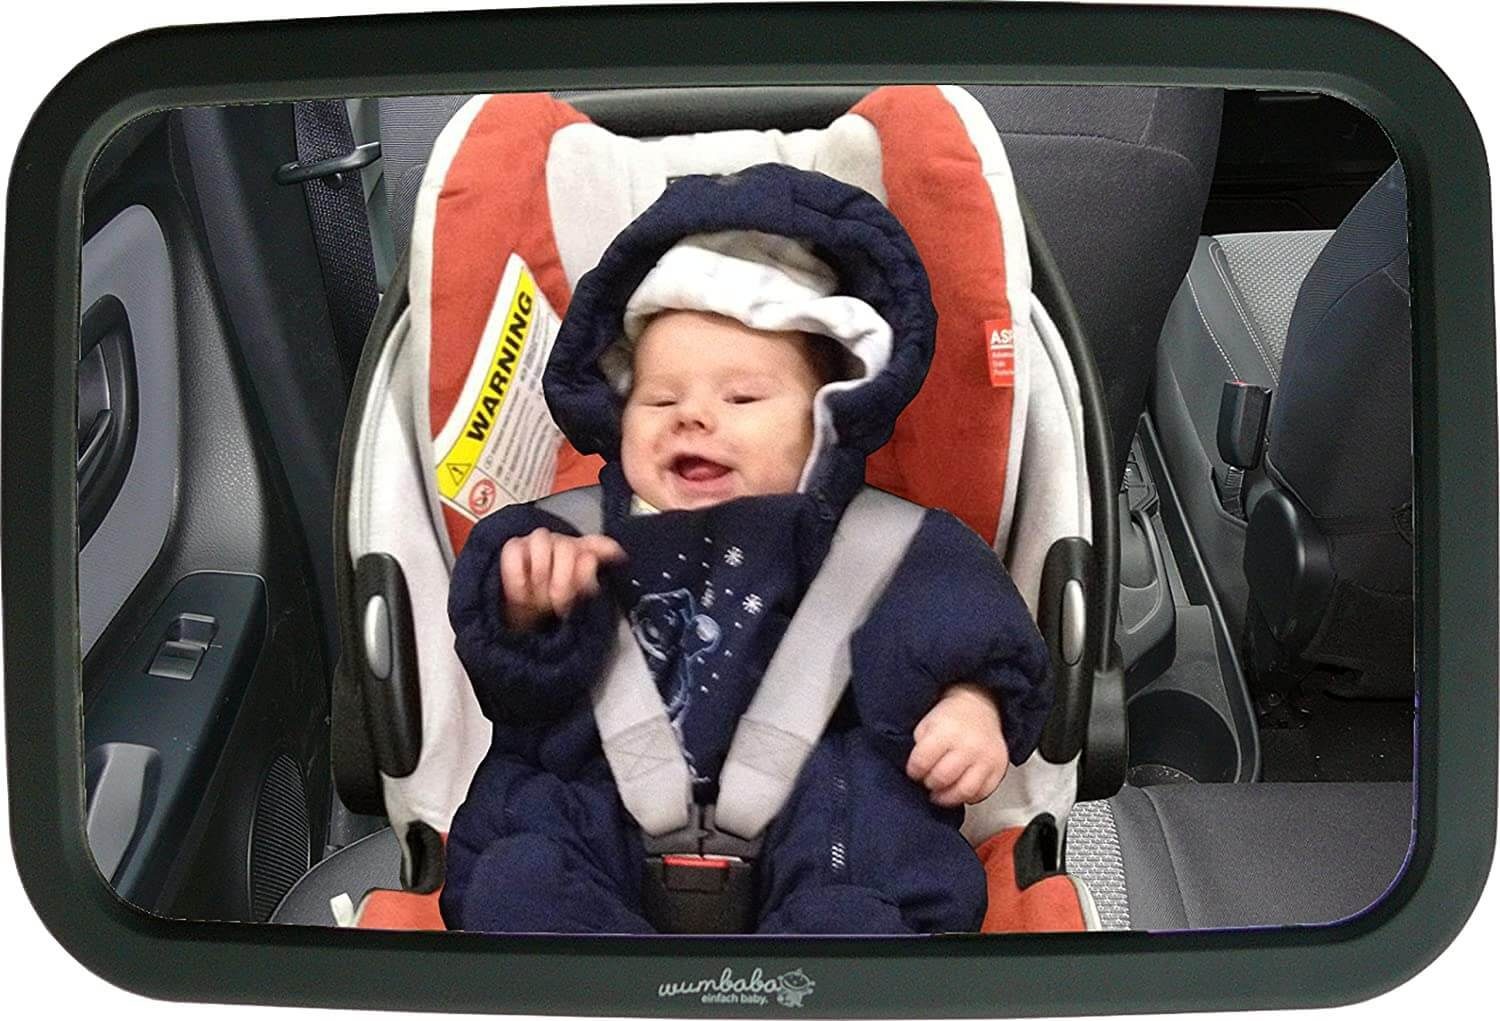 Autositzspiegel, Erstausstattung Rücksitzspiegel Babyspiegel Große Wumbi Vergrößerung konvexe Baby Autospiegel Spiegelfläche Spiegelbildes, des